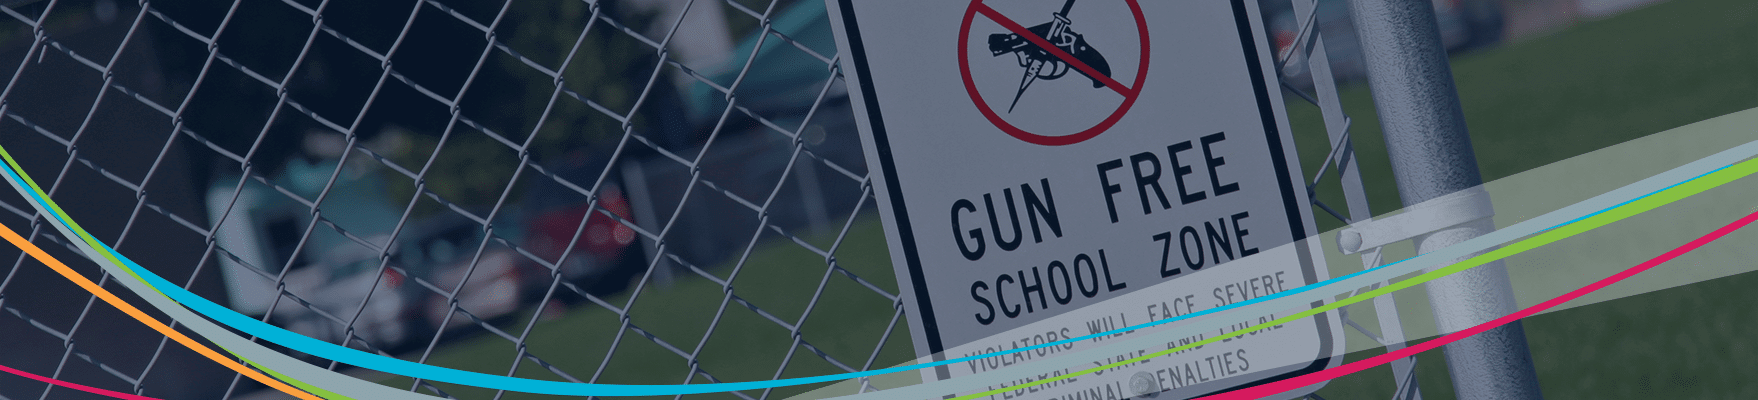 Cartello della zona senza armi sulla recinzione Intestazione per la prevenzione della violenza a scuola